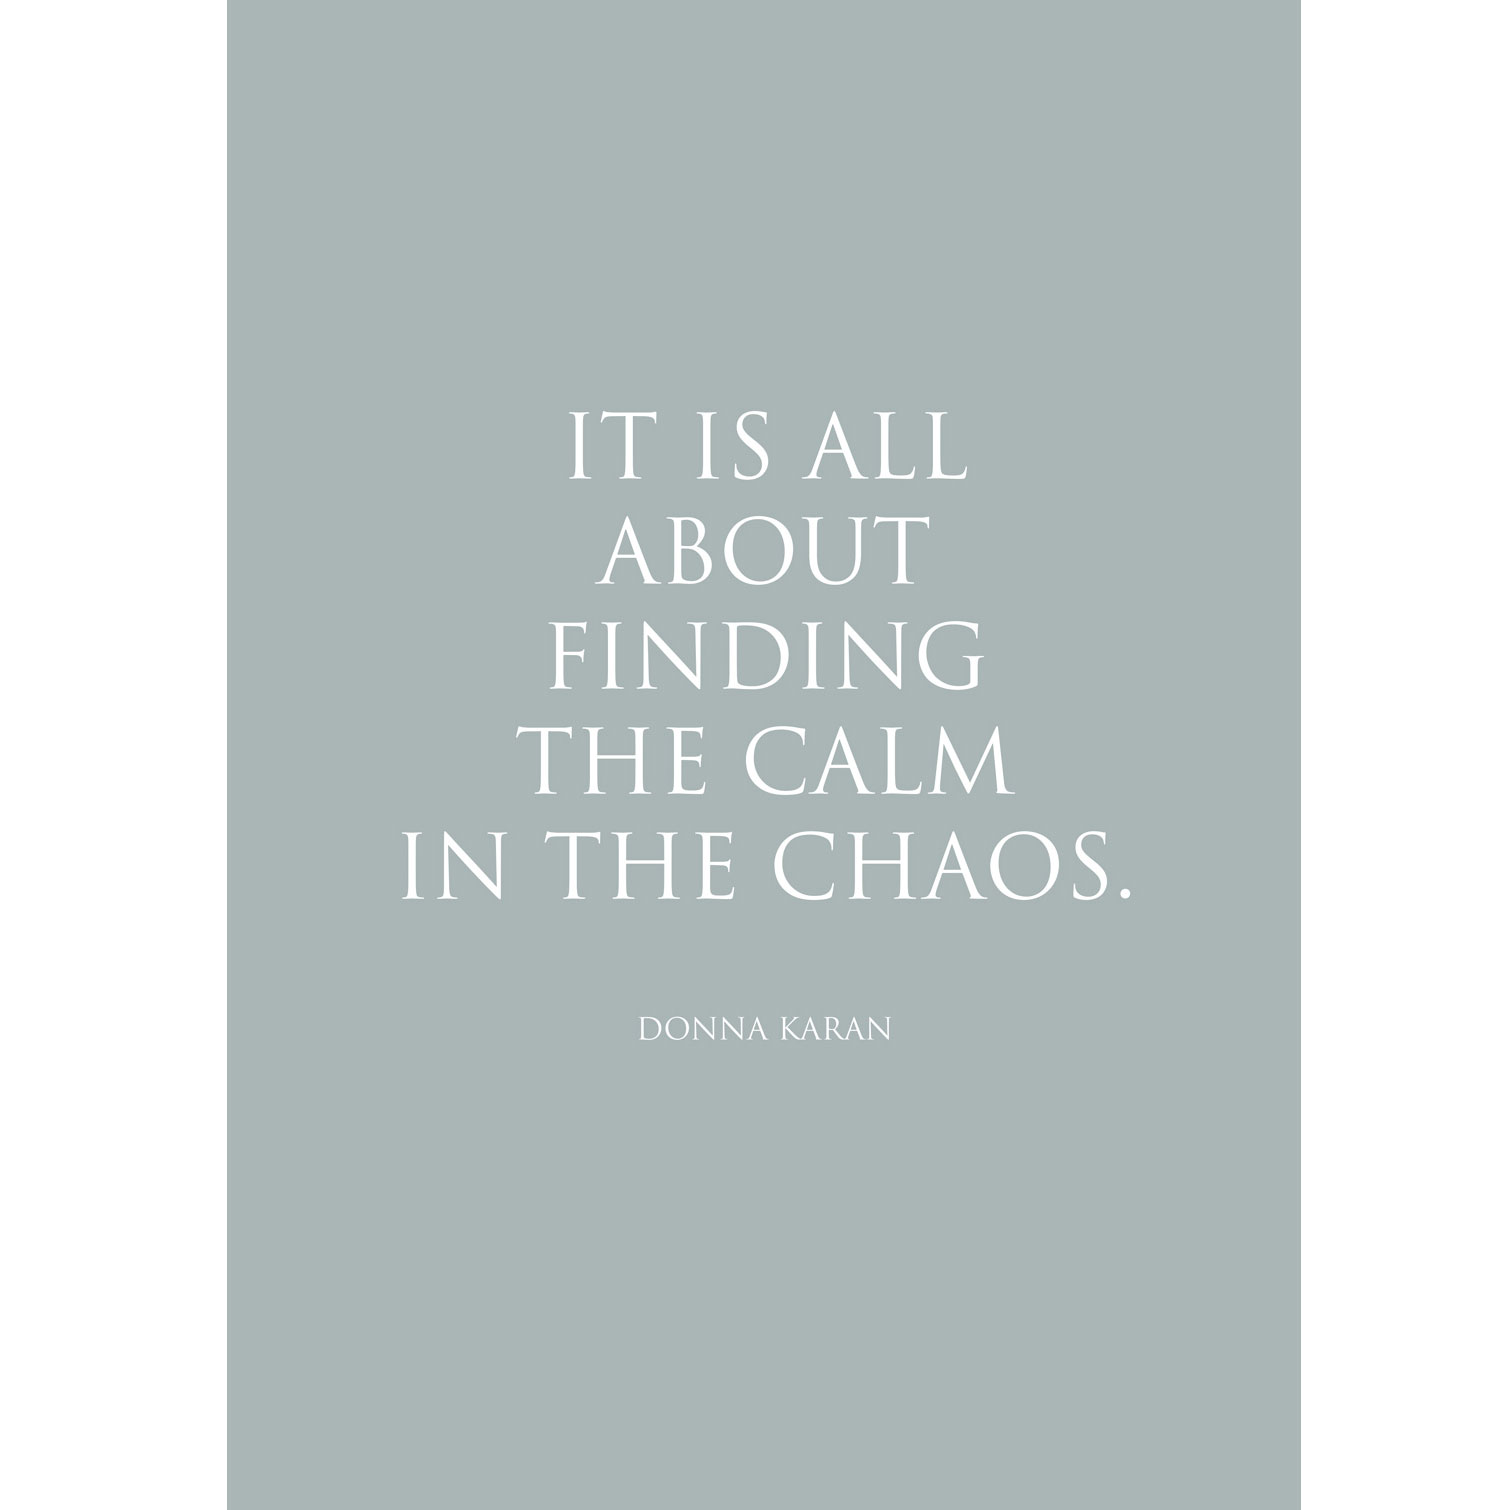 Kunstdruck "The Calm in the Chaos…" Donna Karan von Wunderwort ... letzte Chance, wird nicht nachgedruckt! 